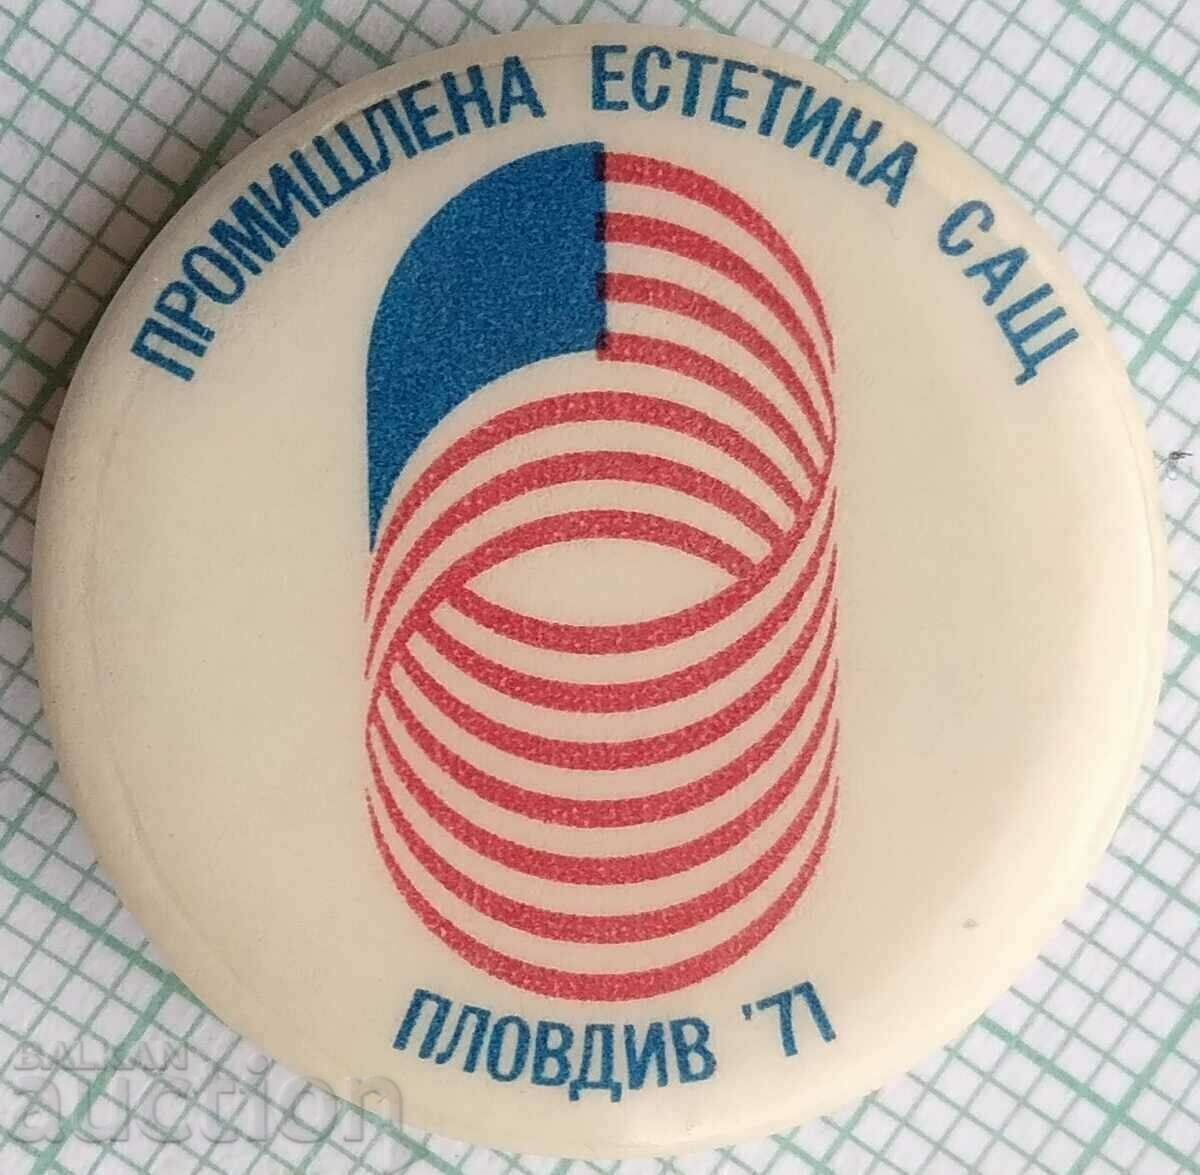 14570 Значка - Промишлена естетика САЩ Пловдив 1971